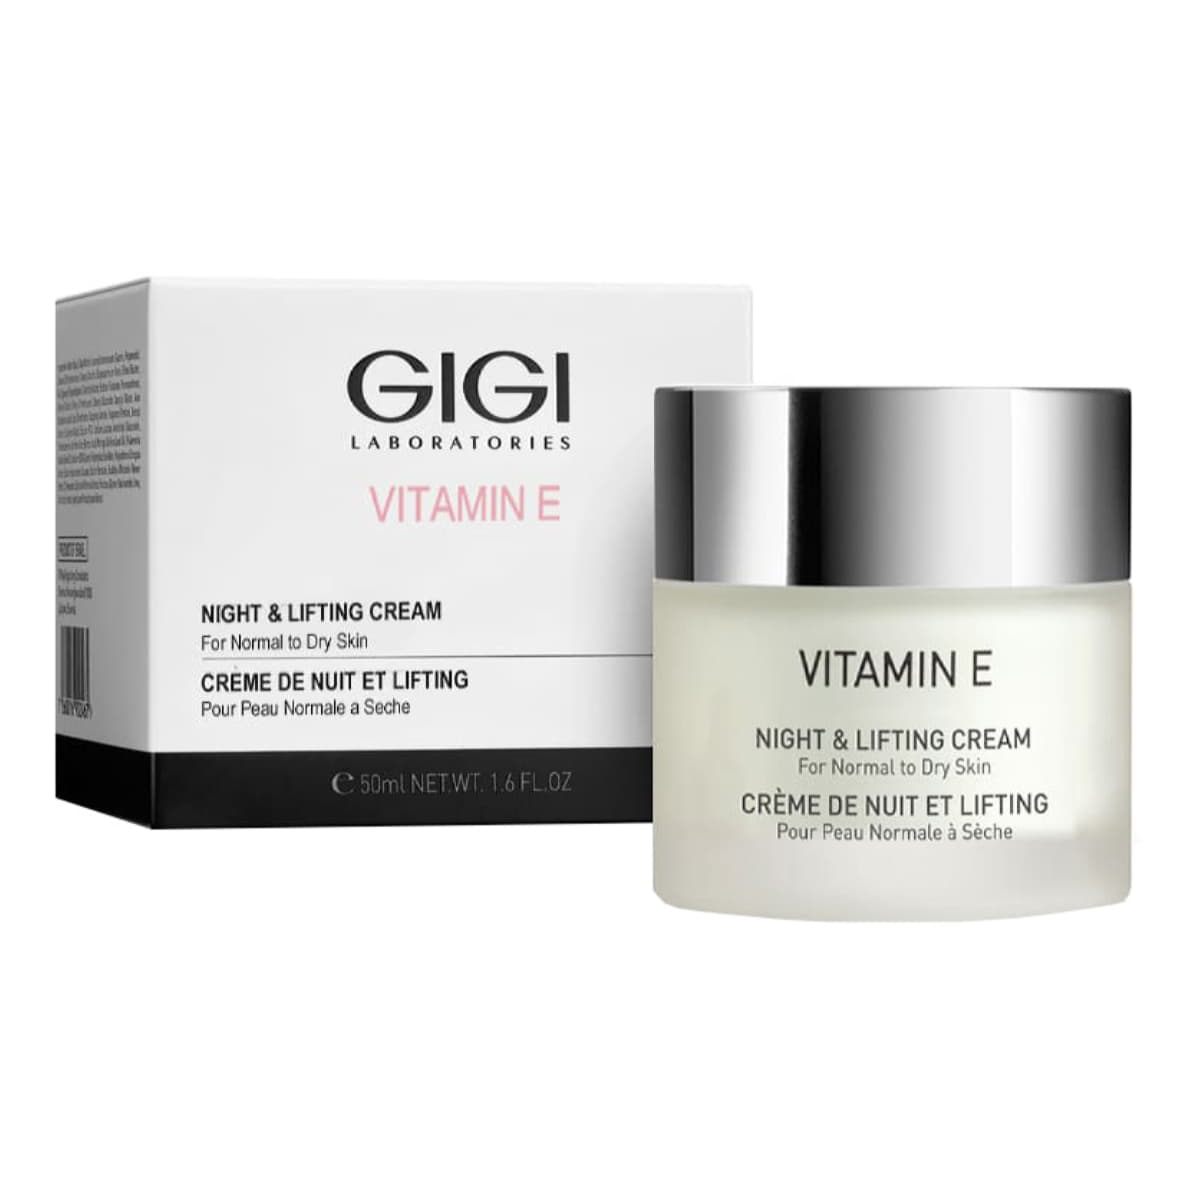 GiGi Ночной лифтинговый крем Night & Lifting Cream For Normal to Dry Skin, 50 мл (GiGi, Vitamin E) gigi крем vitamin e hydratant for normal to dry skin 50 мл